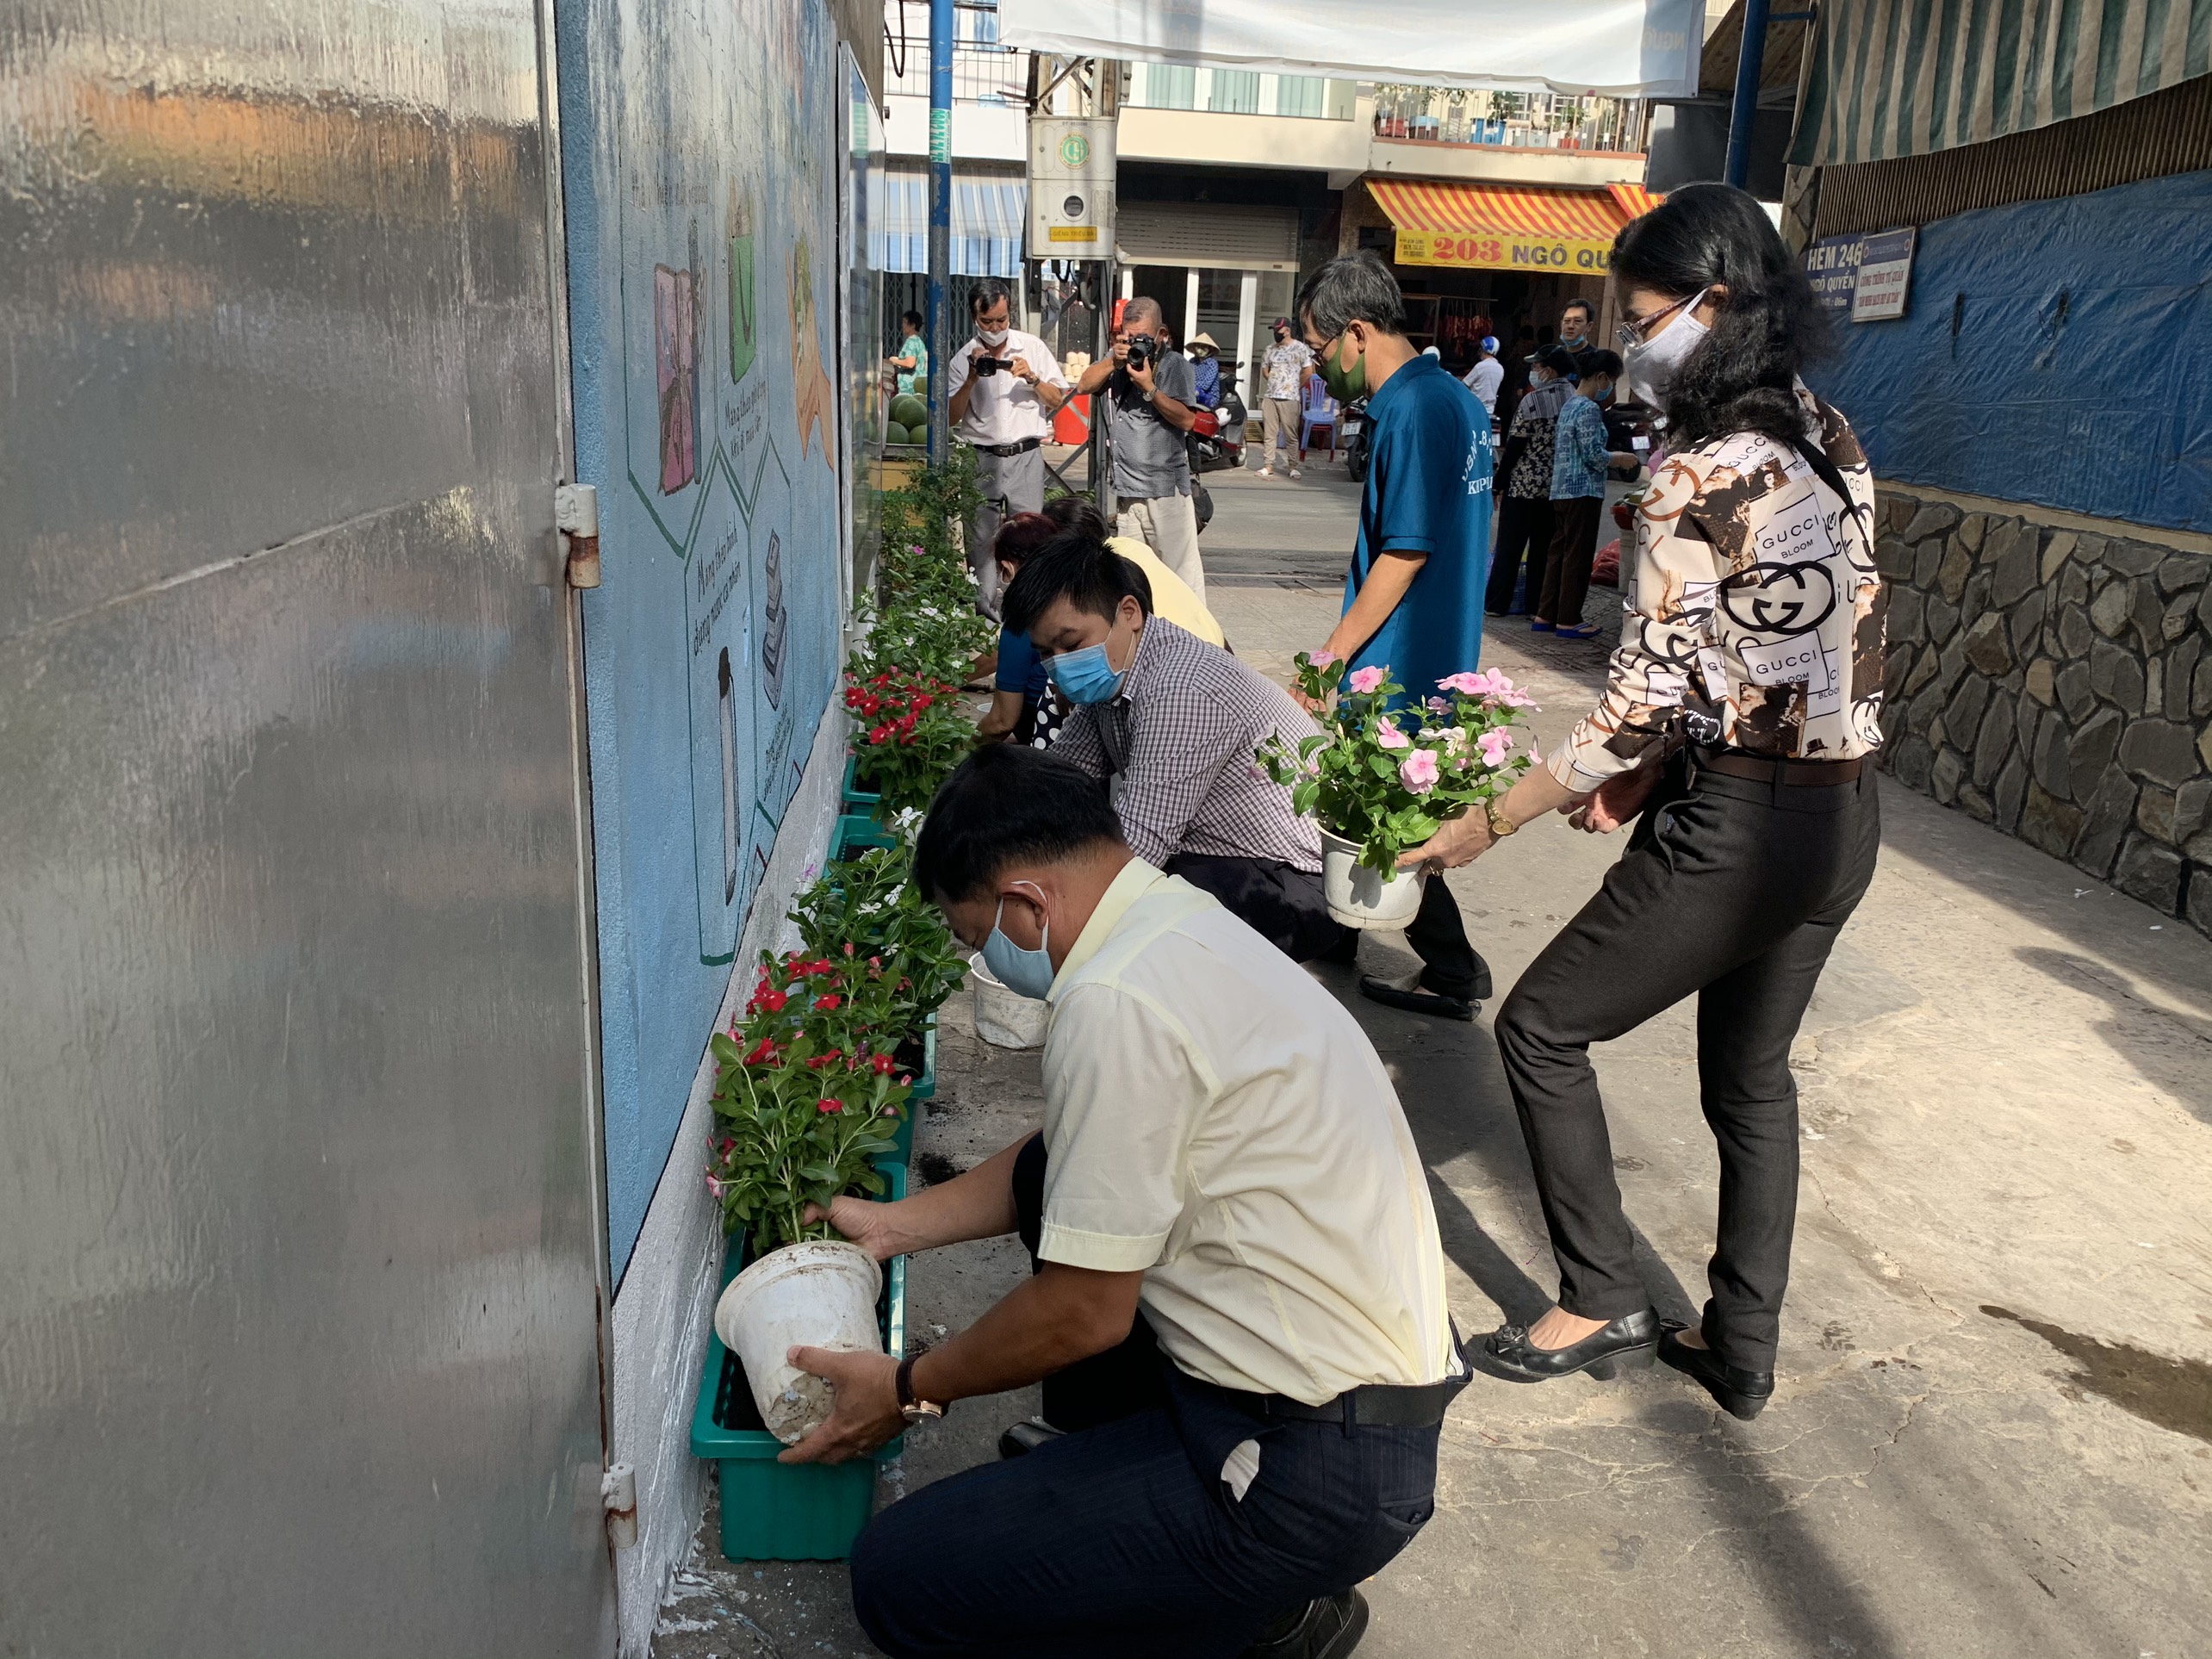 Image: Phường 8 tổ chức lễ ra mắt công trình tuyến hẻm 246 Ngô Quyền và phát động phong trào trồng cây cho hộ dân cư